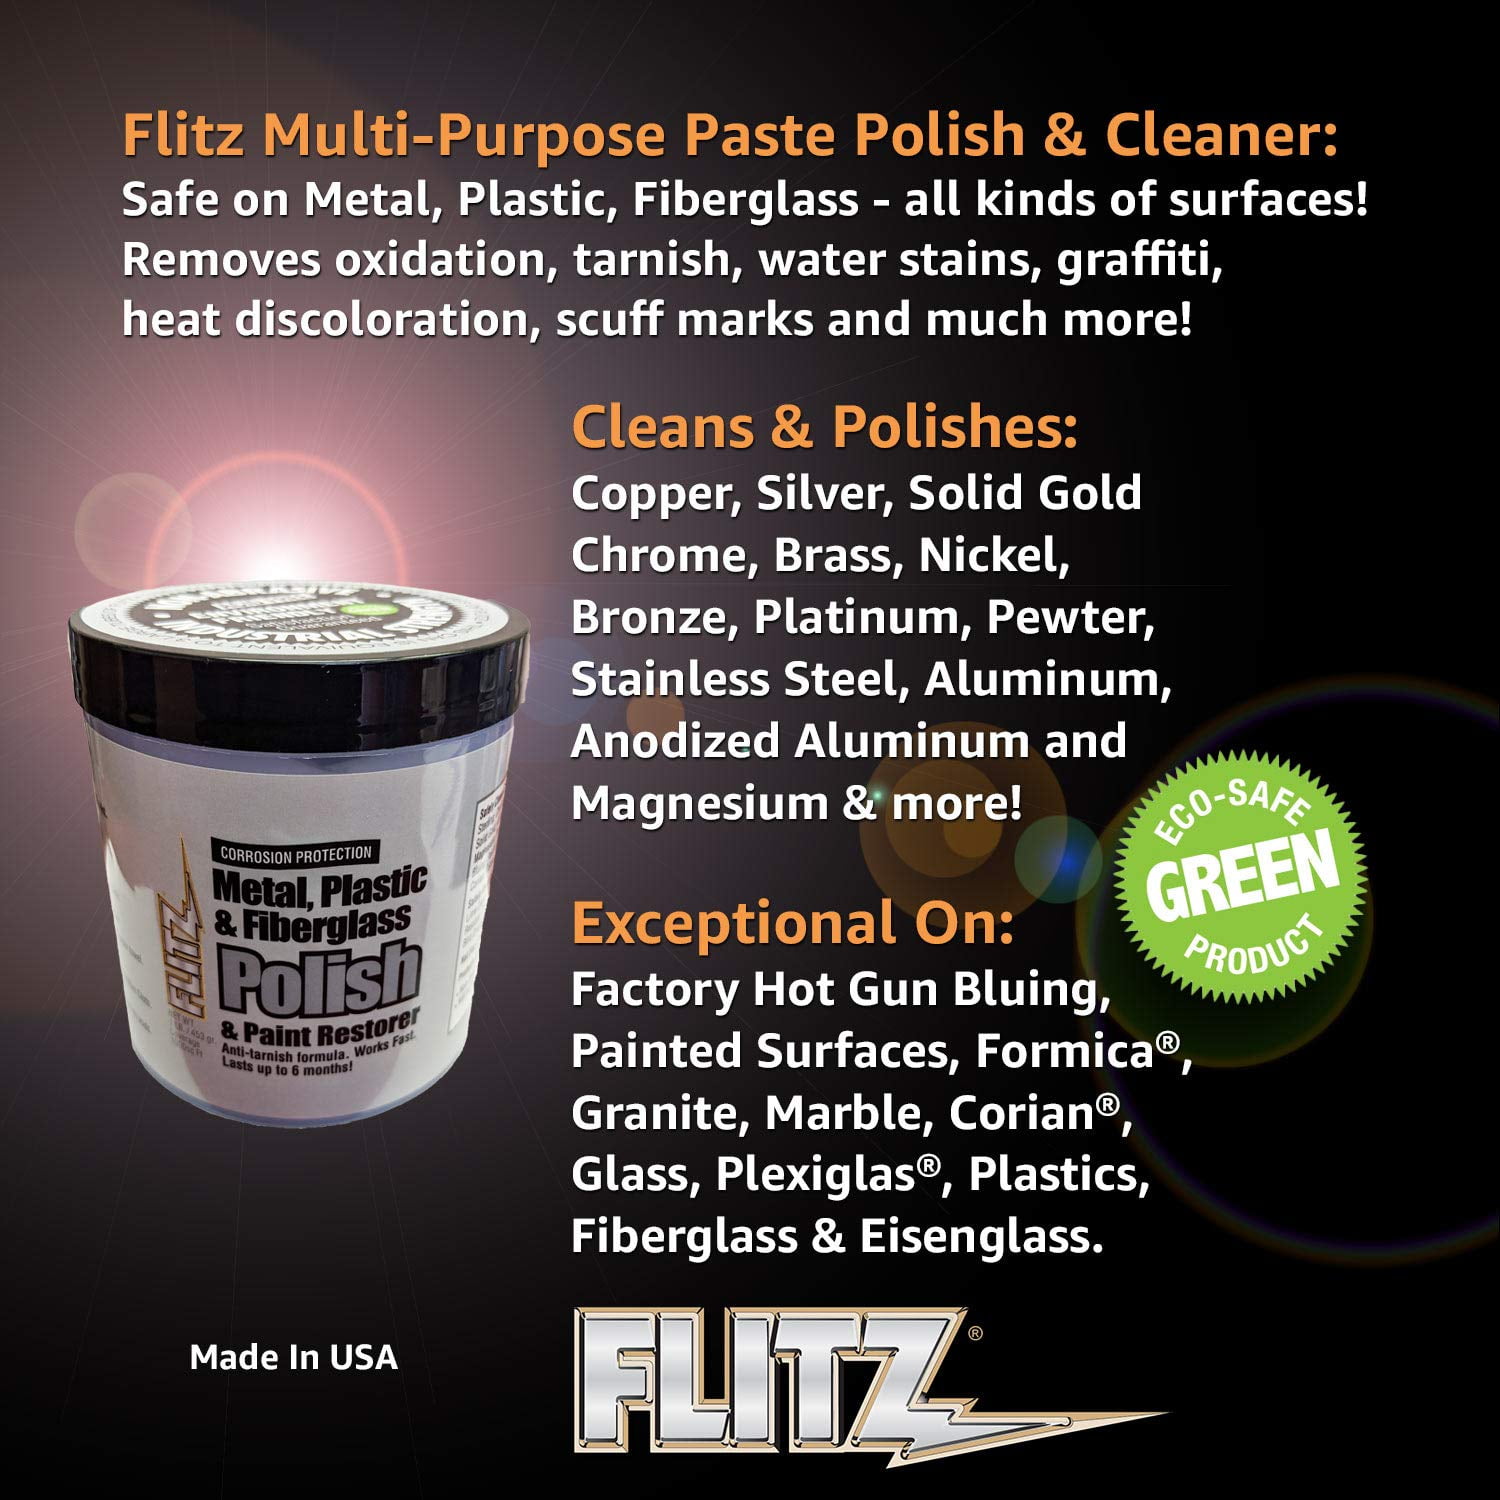 Flitz Metal, Plastic Fiberglass Polish Paste - 1.0lb [CA 03516-6]